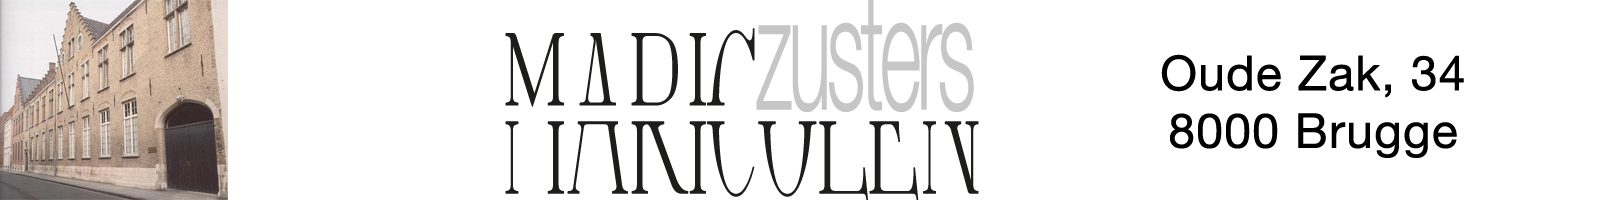 Zusters Maricolen logo